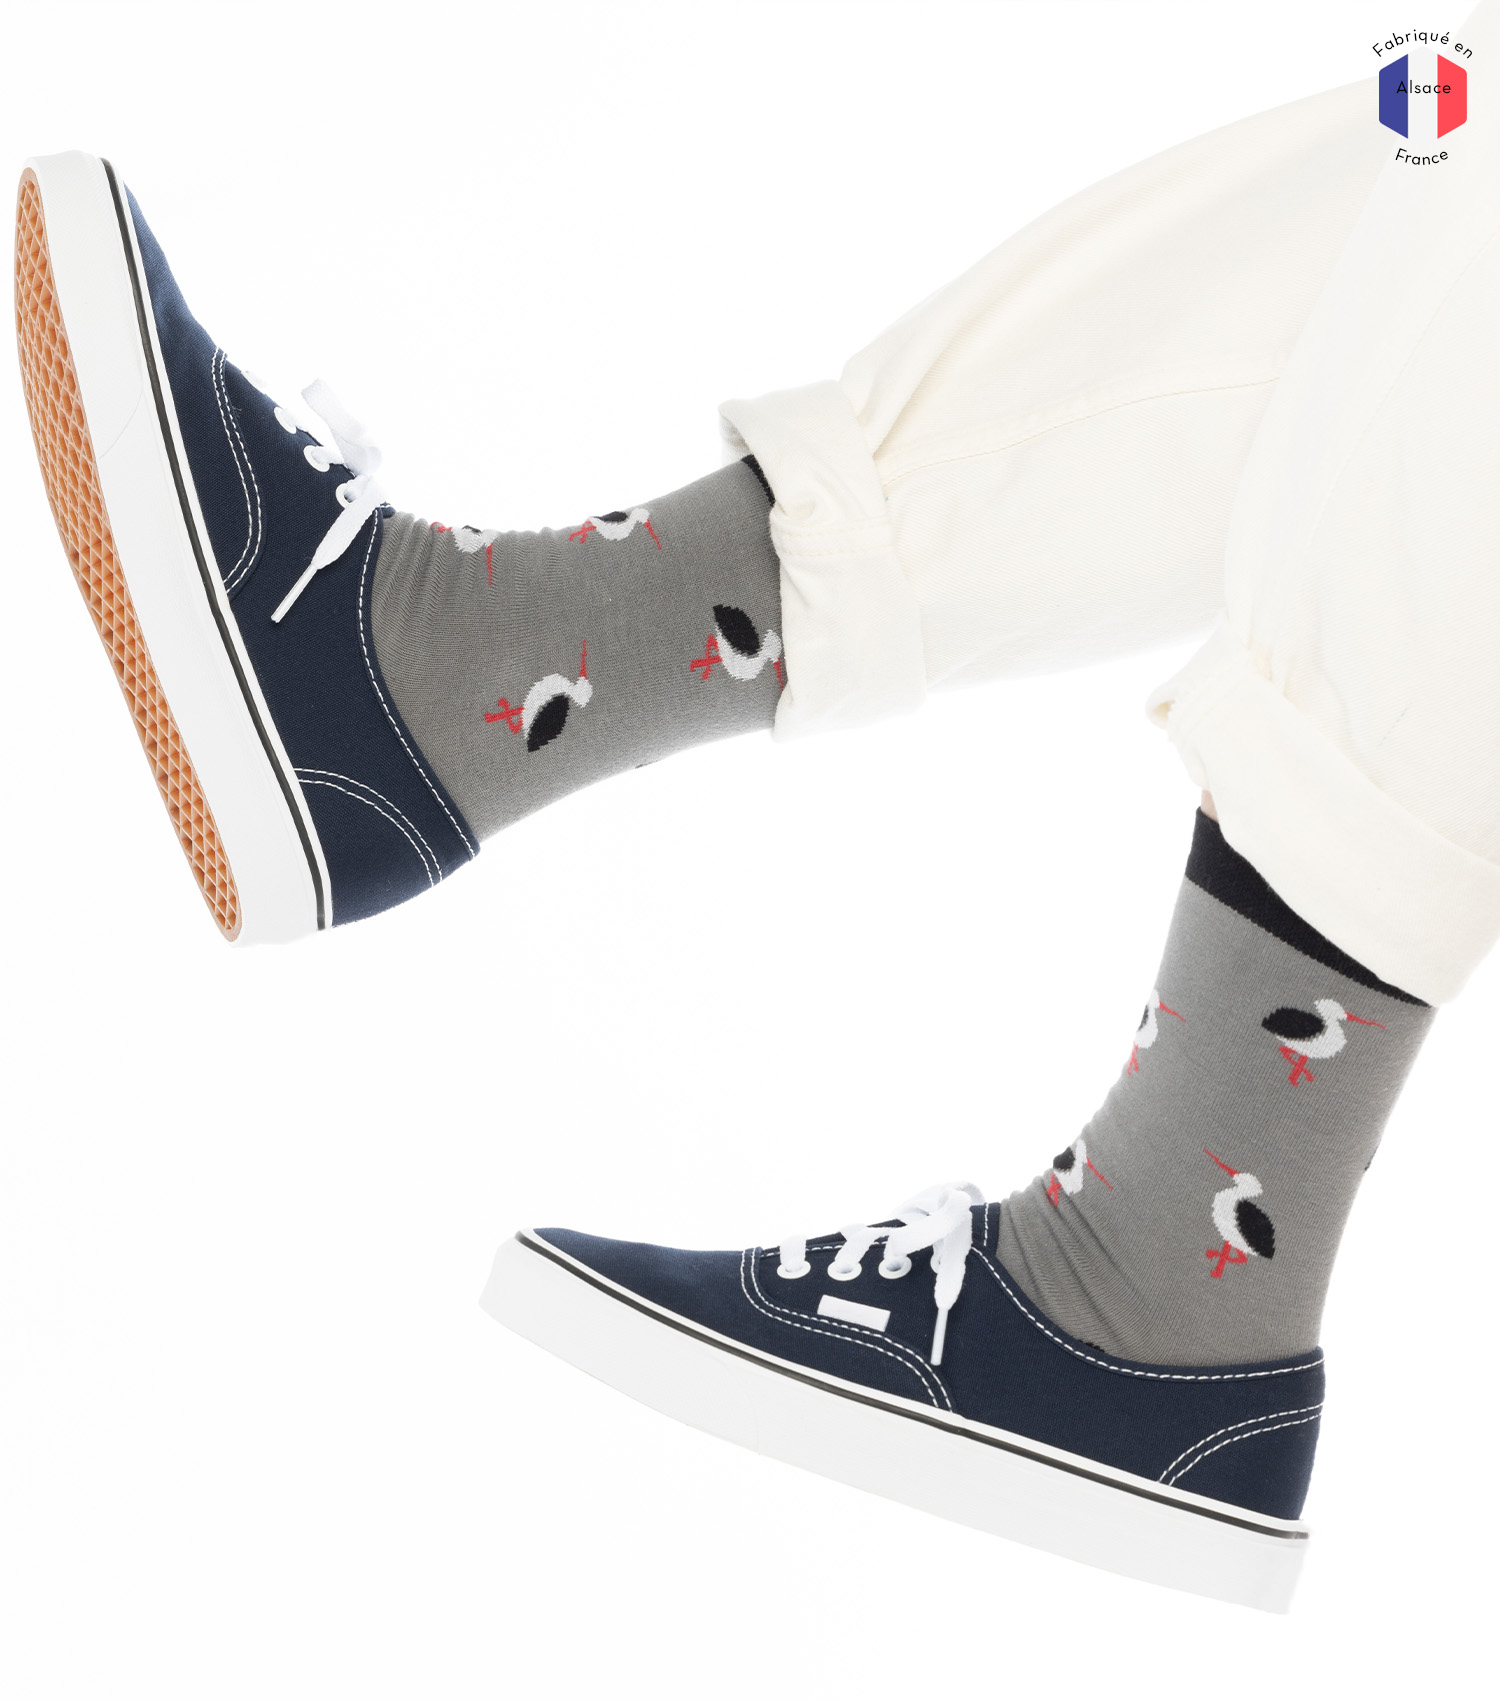 theim-chaussettes-montantes-cigogne-femme-labonal-1500x1700px